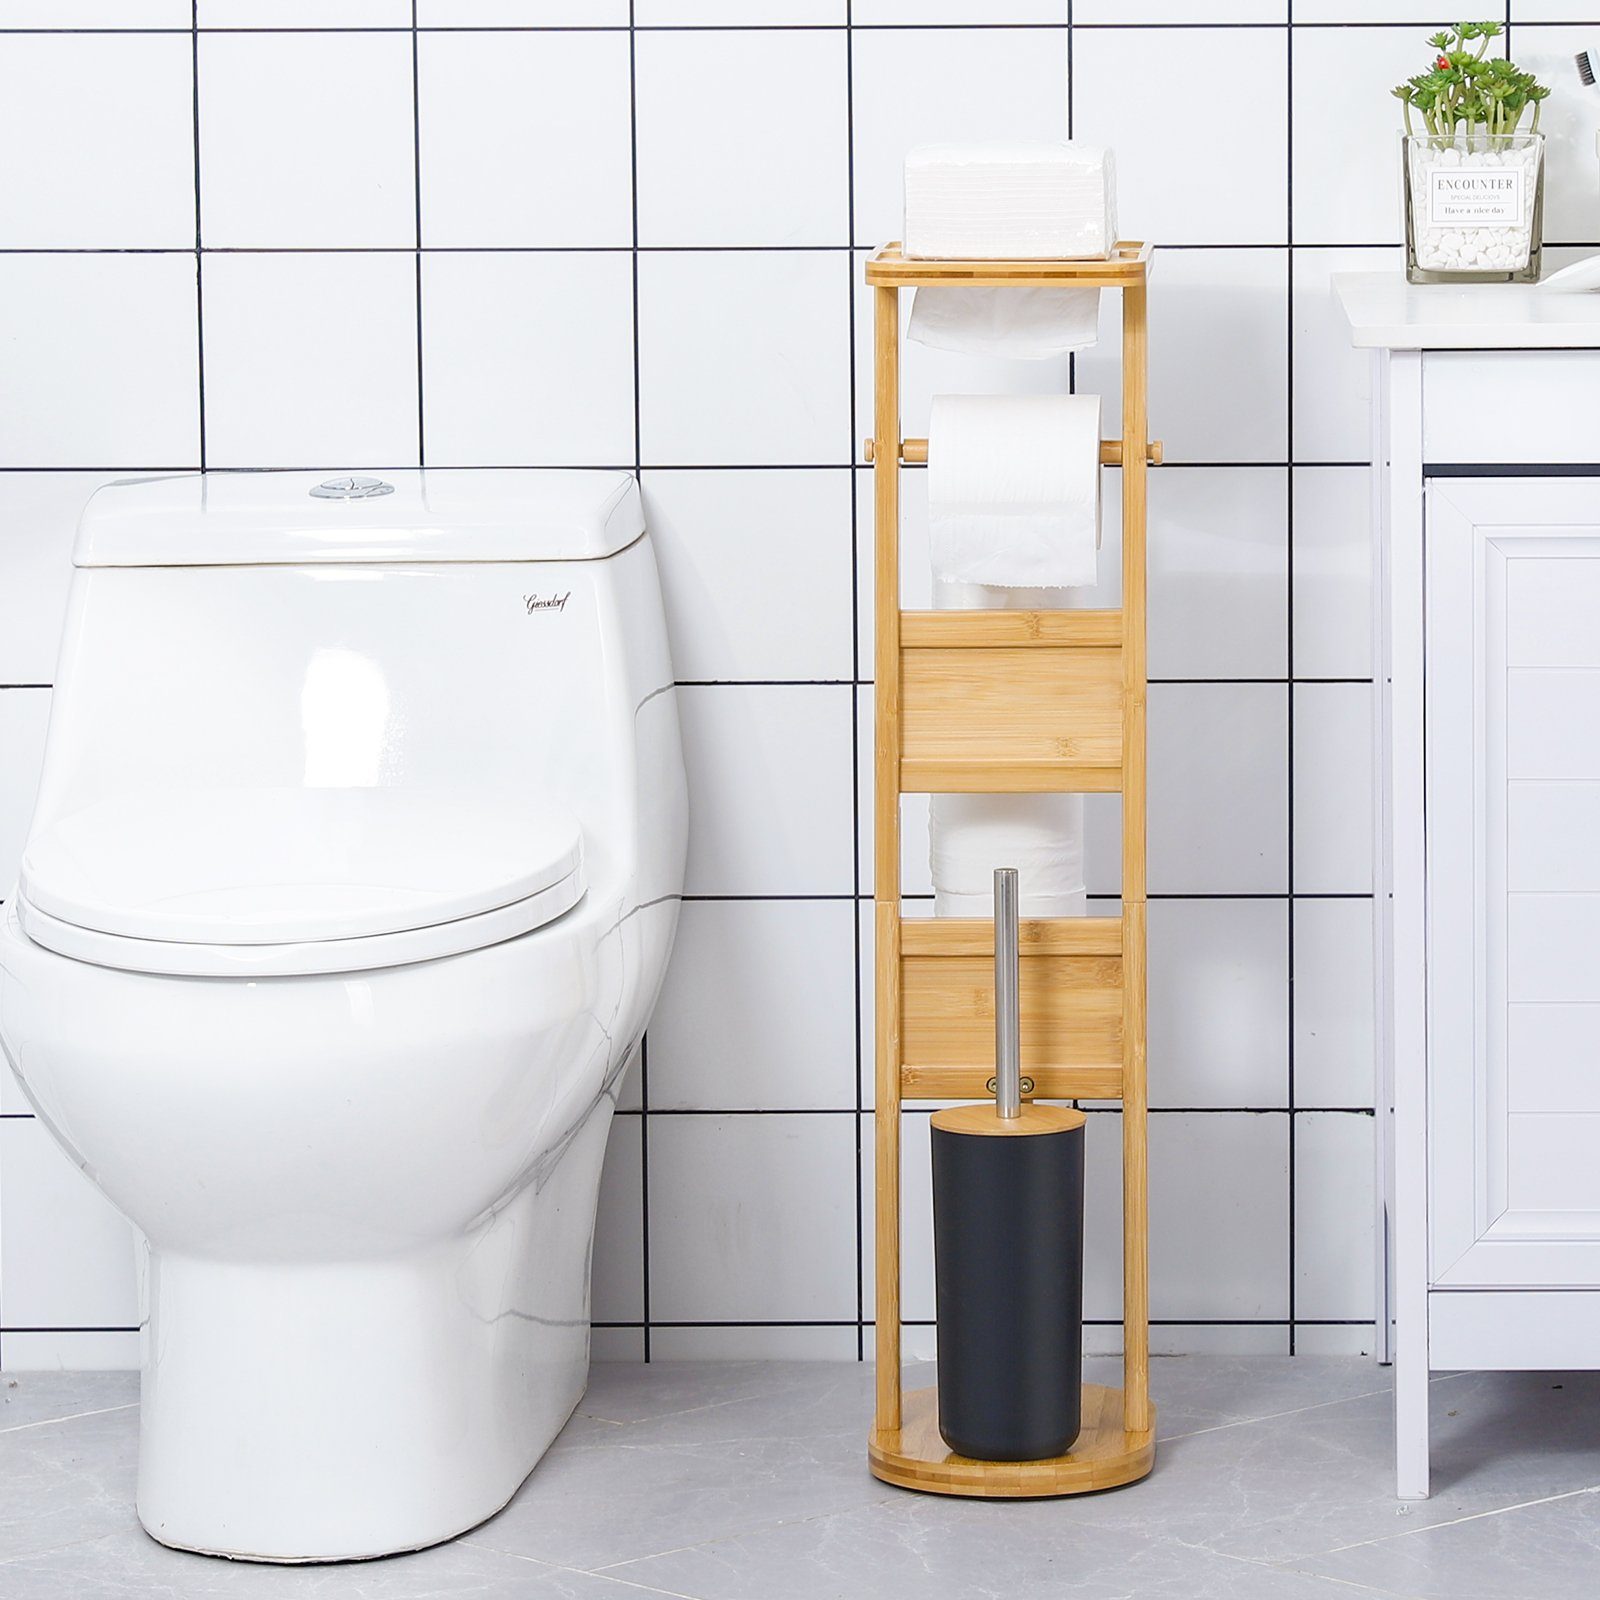 Yorbay WC-Garnitur WC-Garnitur aus WC-Bürstenhalter/Ablage, /Toilettenbürste/Klorollenhalter), WC, Toilette, (mit WC Toilettenpapierhalter Badezimmer Garnitur Stand Toilettenpapierhalter stehend, für Bambus, und